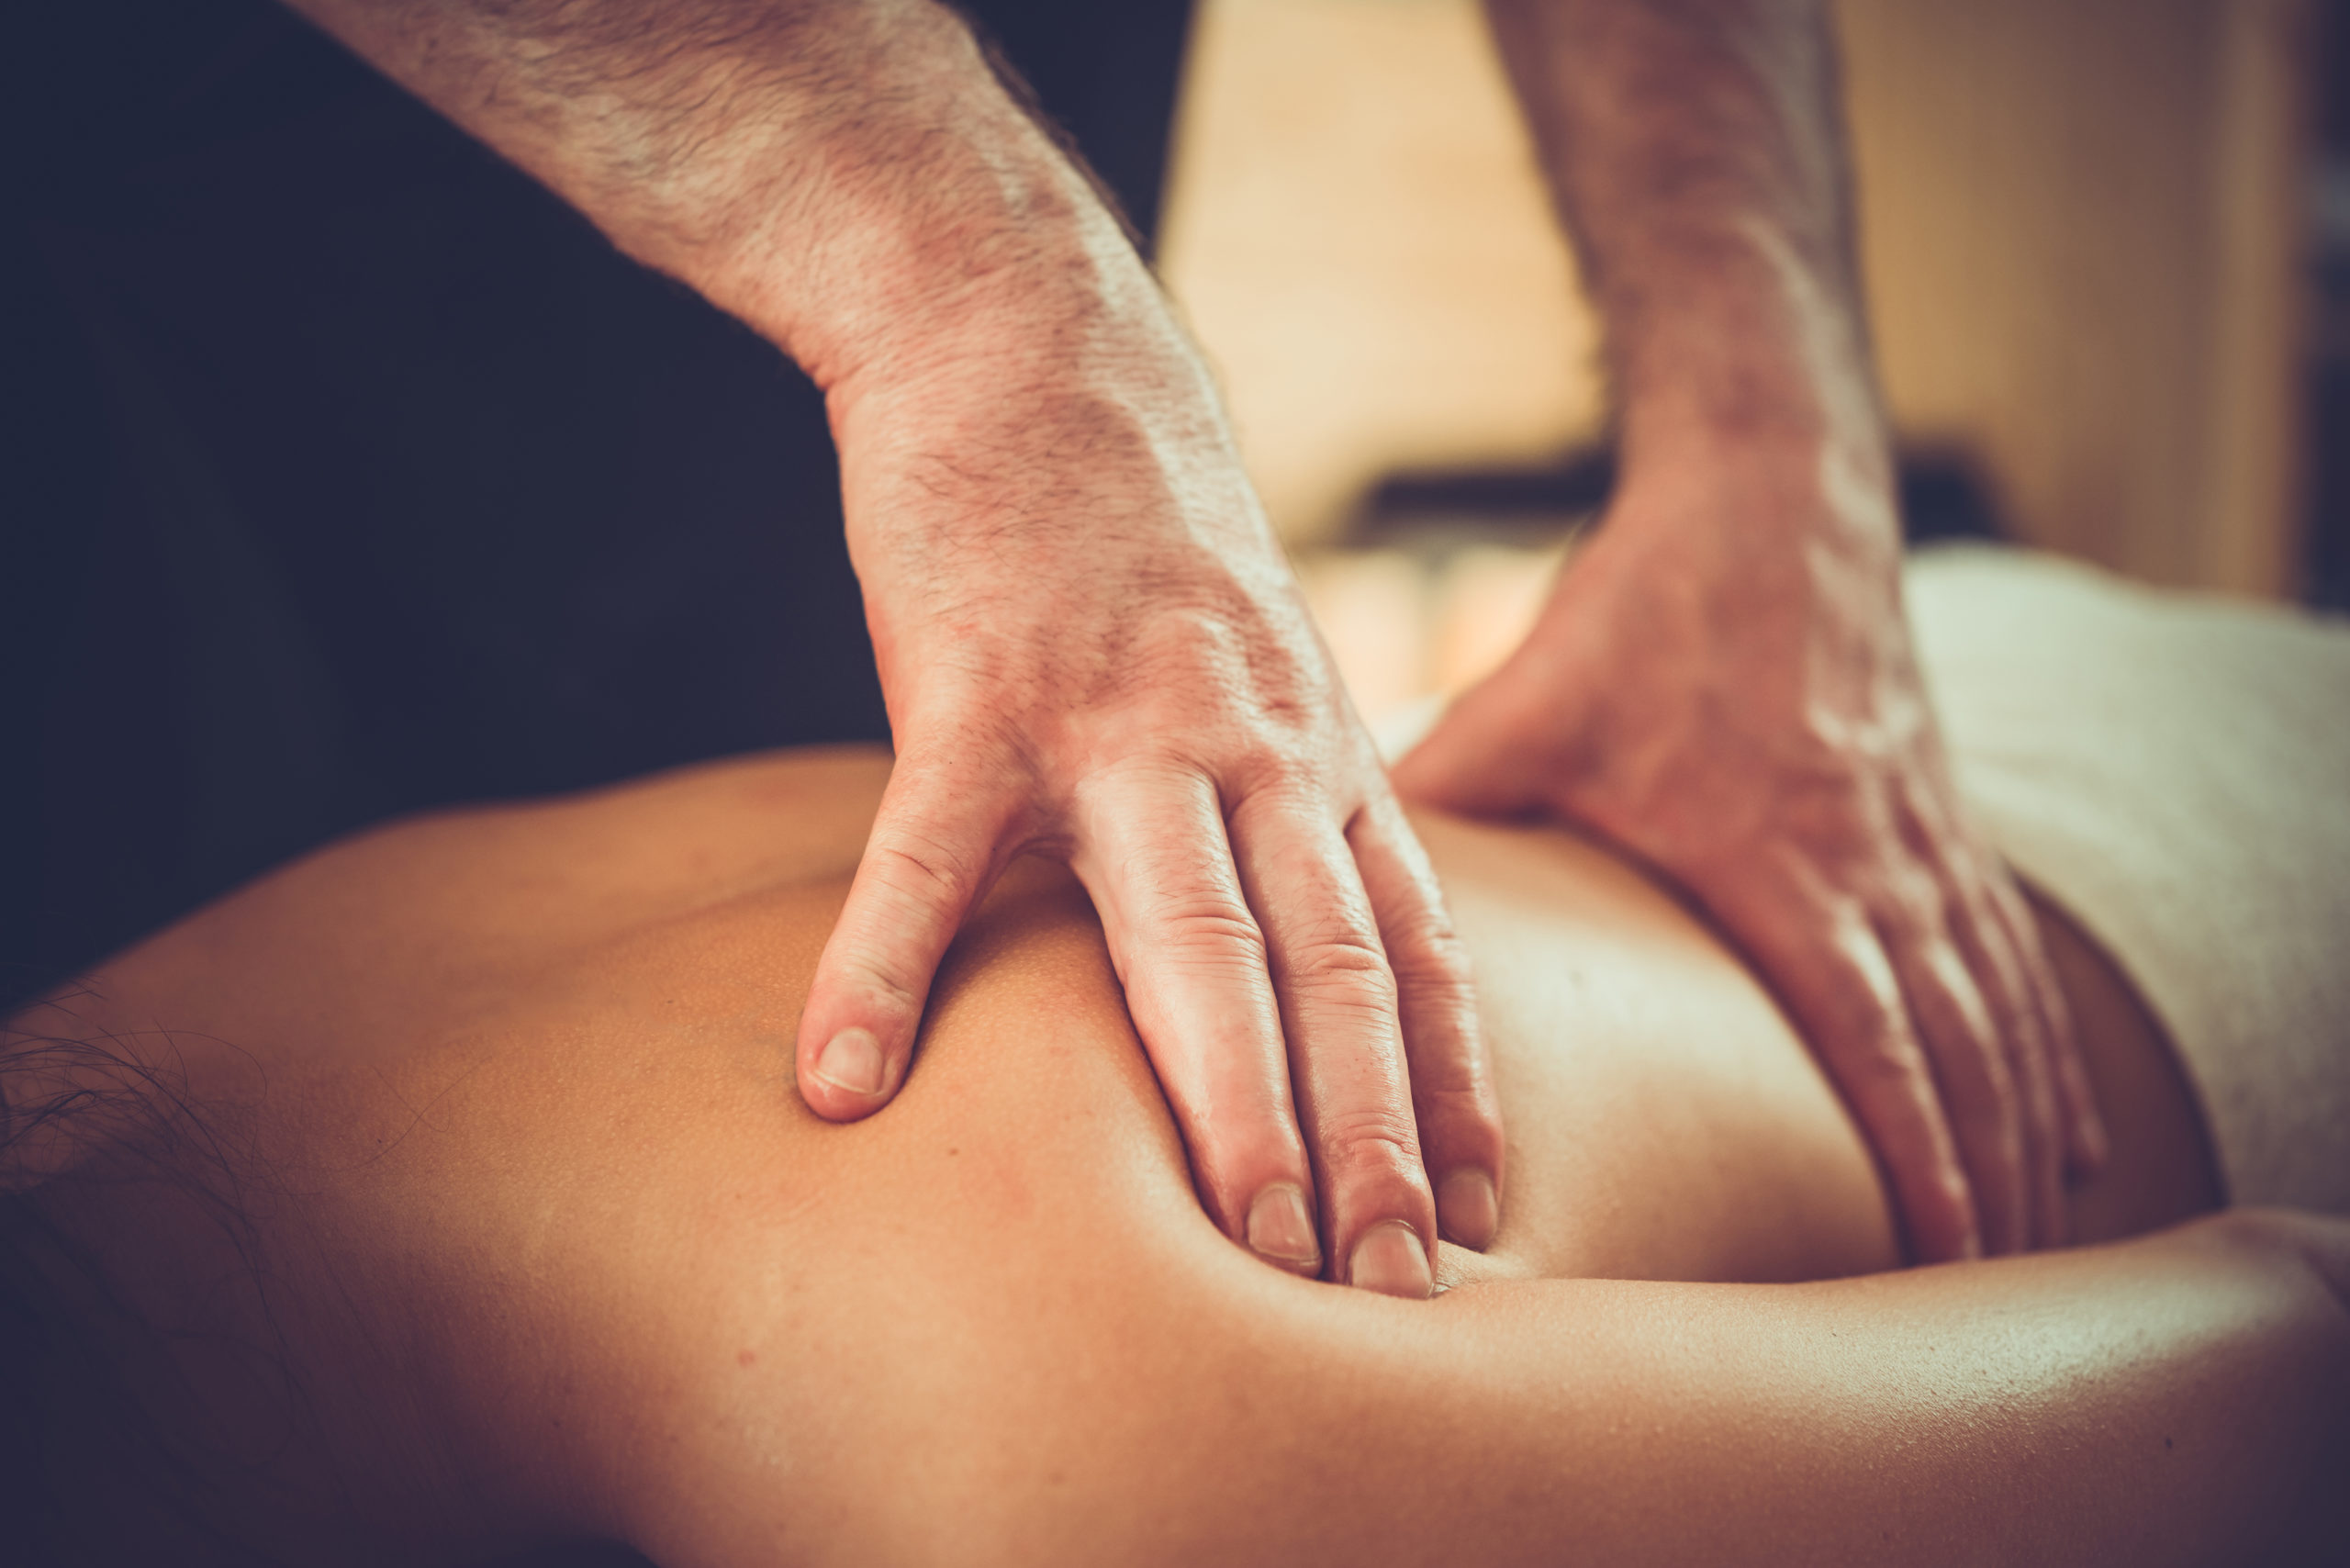 massage-osteopathe-pied-dos-main-hanche-bien-etre-vie-assurance-ludovic-totil-martinique-osteopathie-1